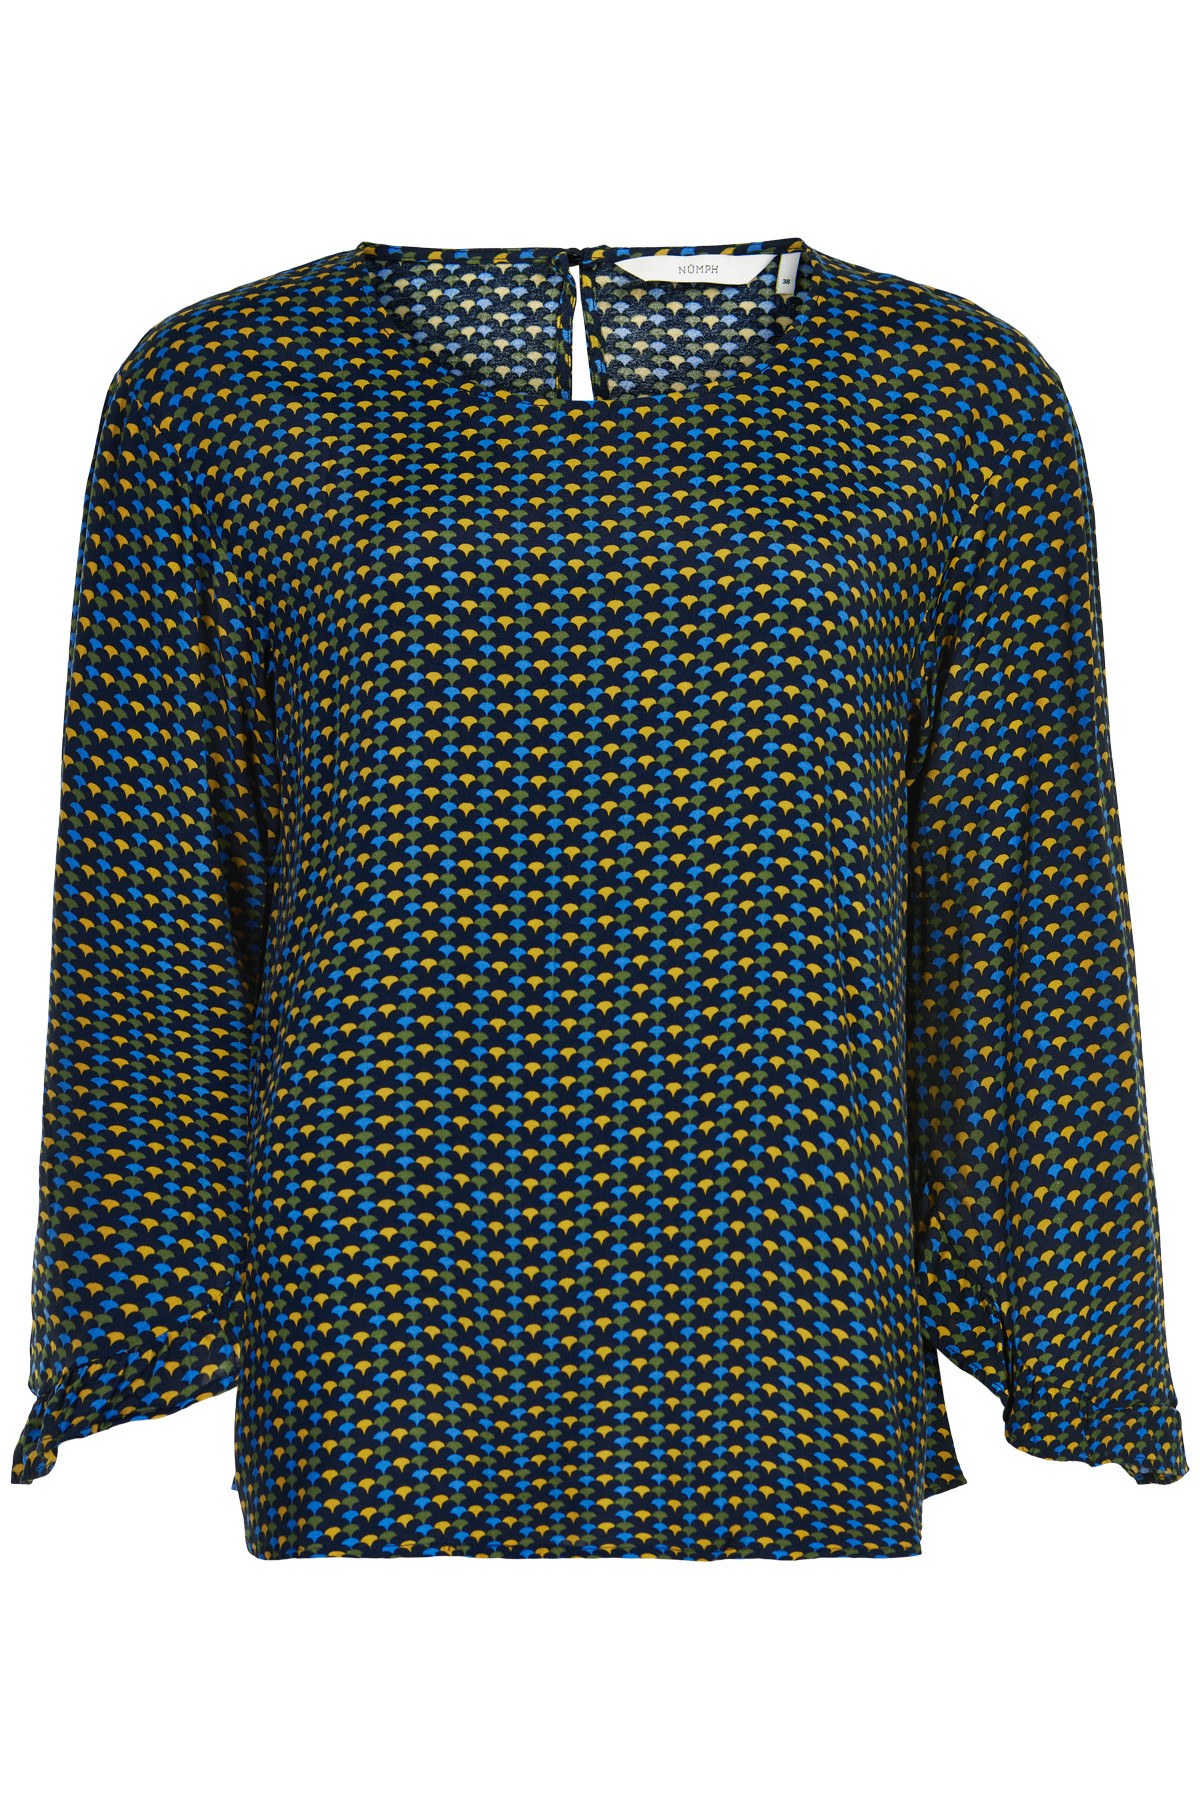 Nümph Nuailish Skjorte, Farve: Blå, Størrelse: 34, Dame